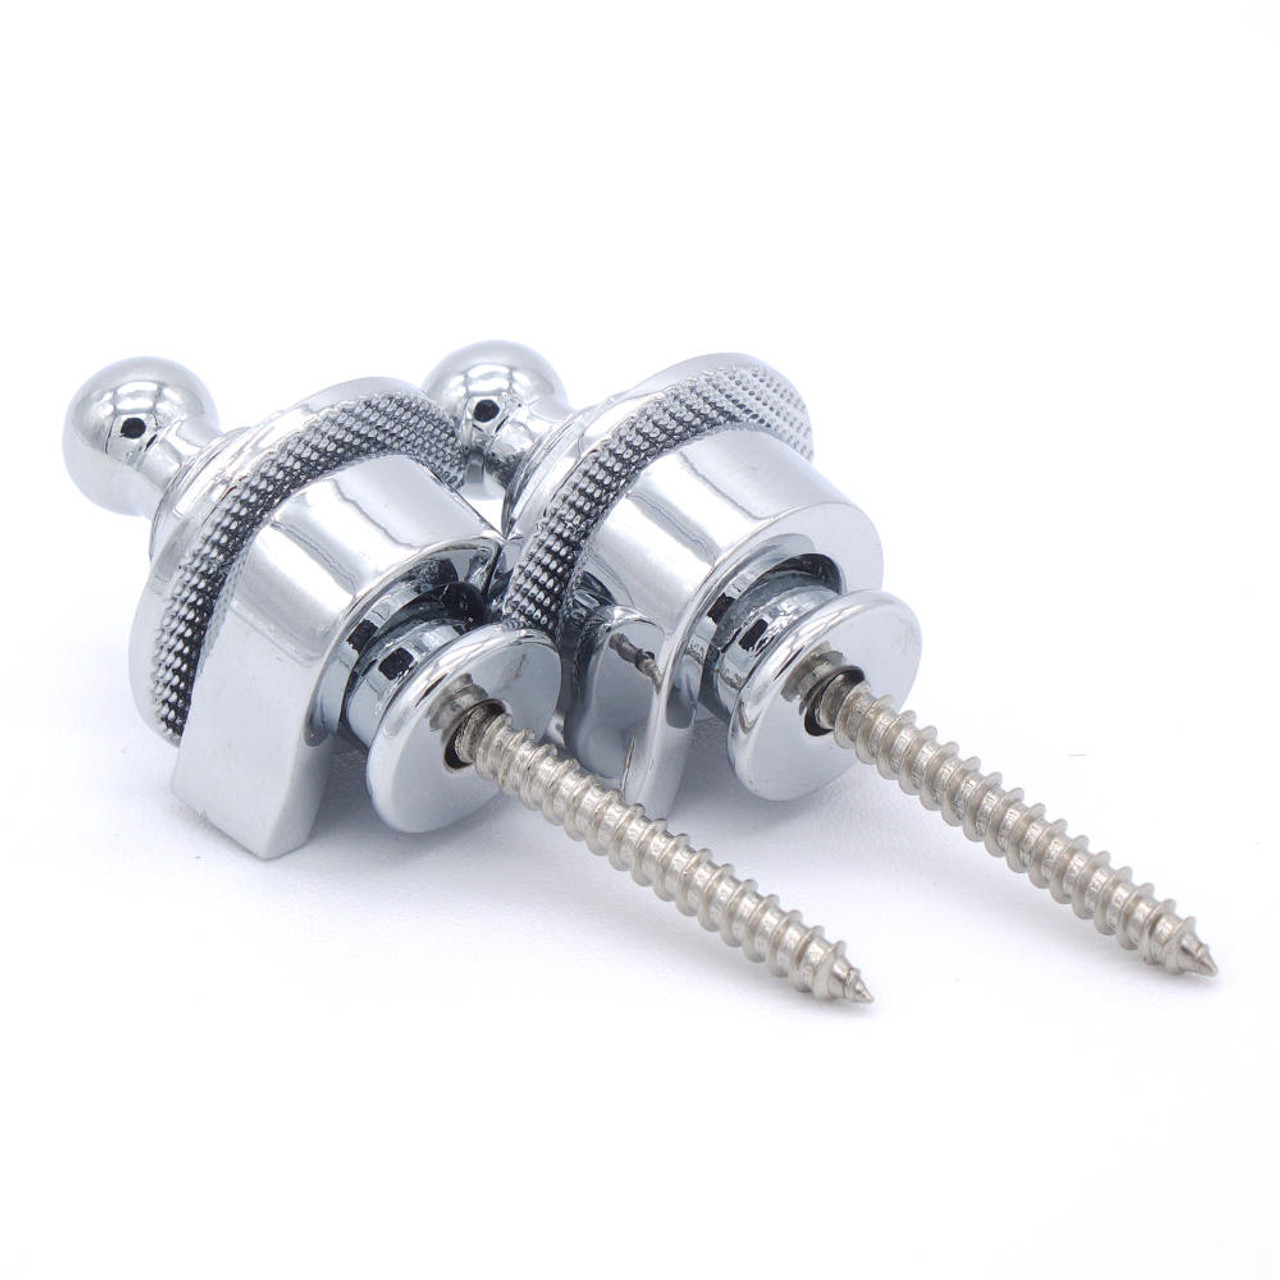 Schaller Style Strap Locks - Chrome (pair)